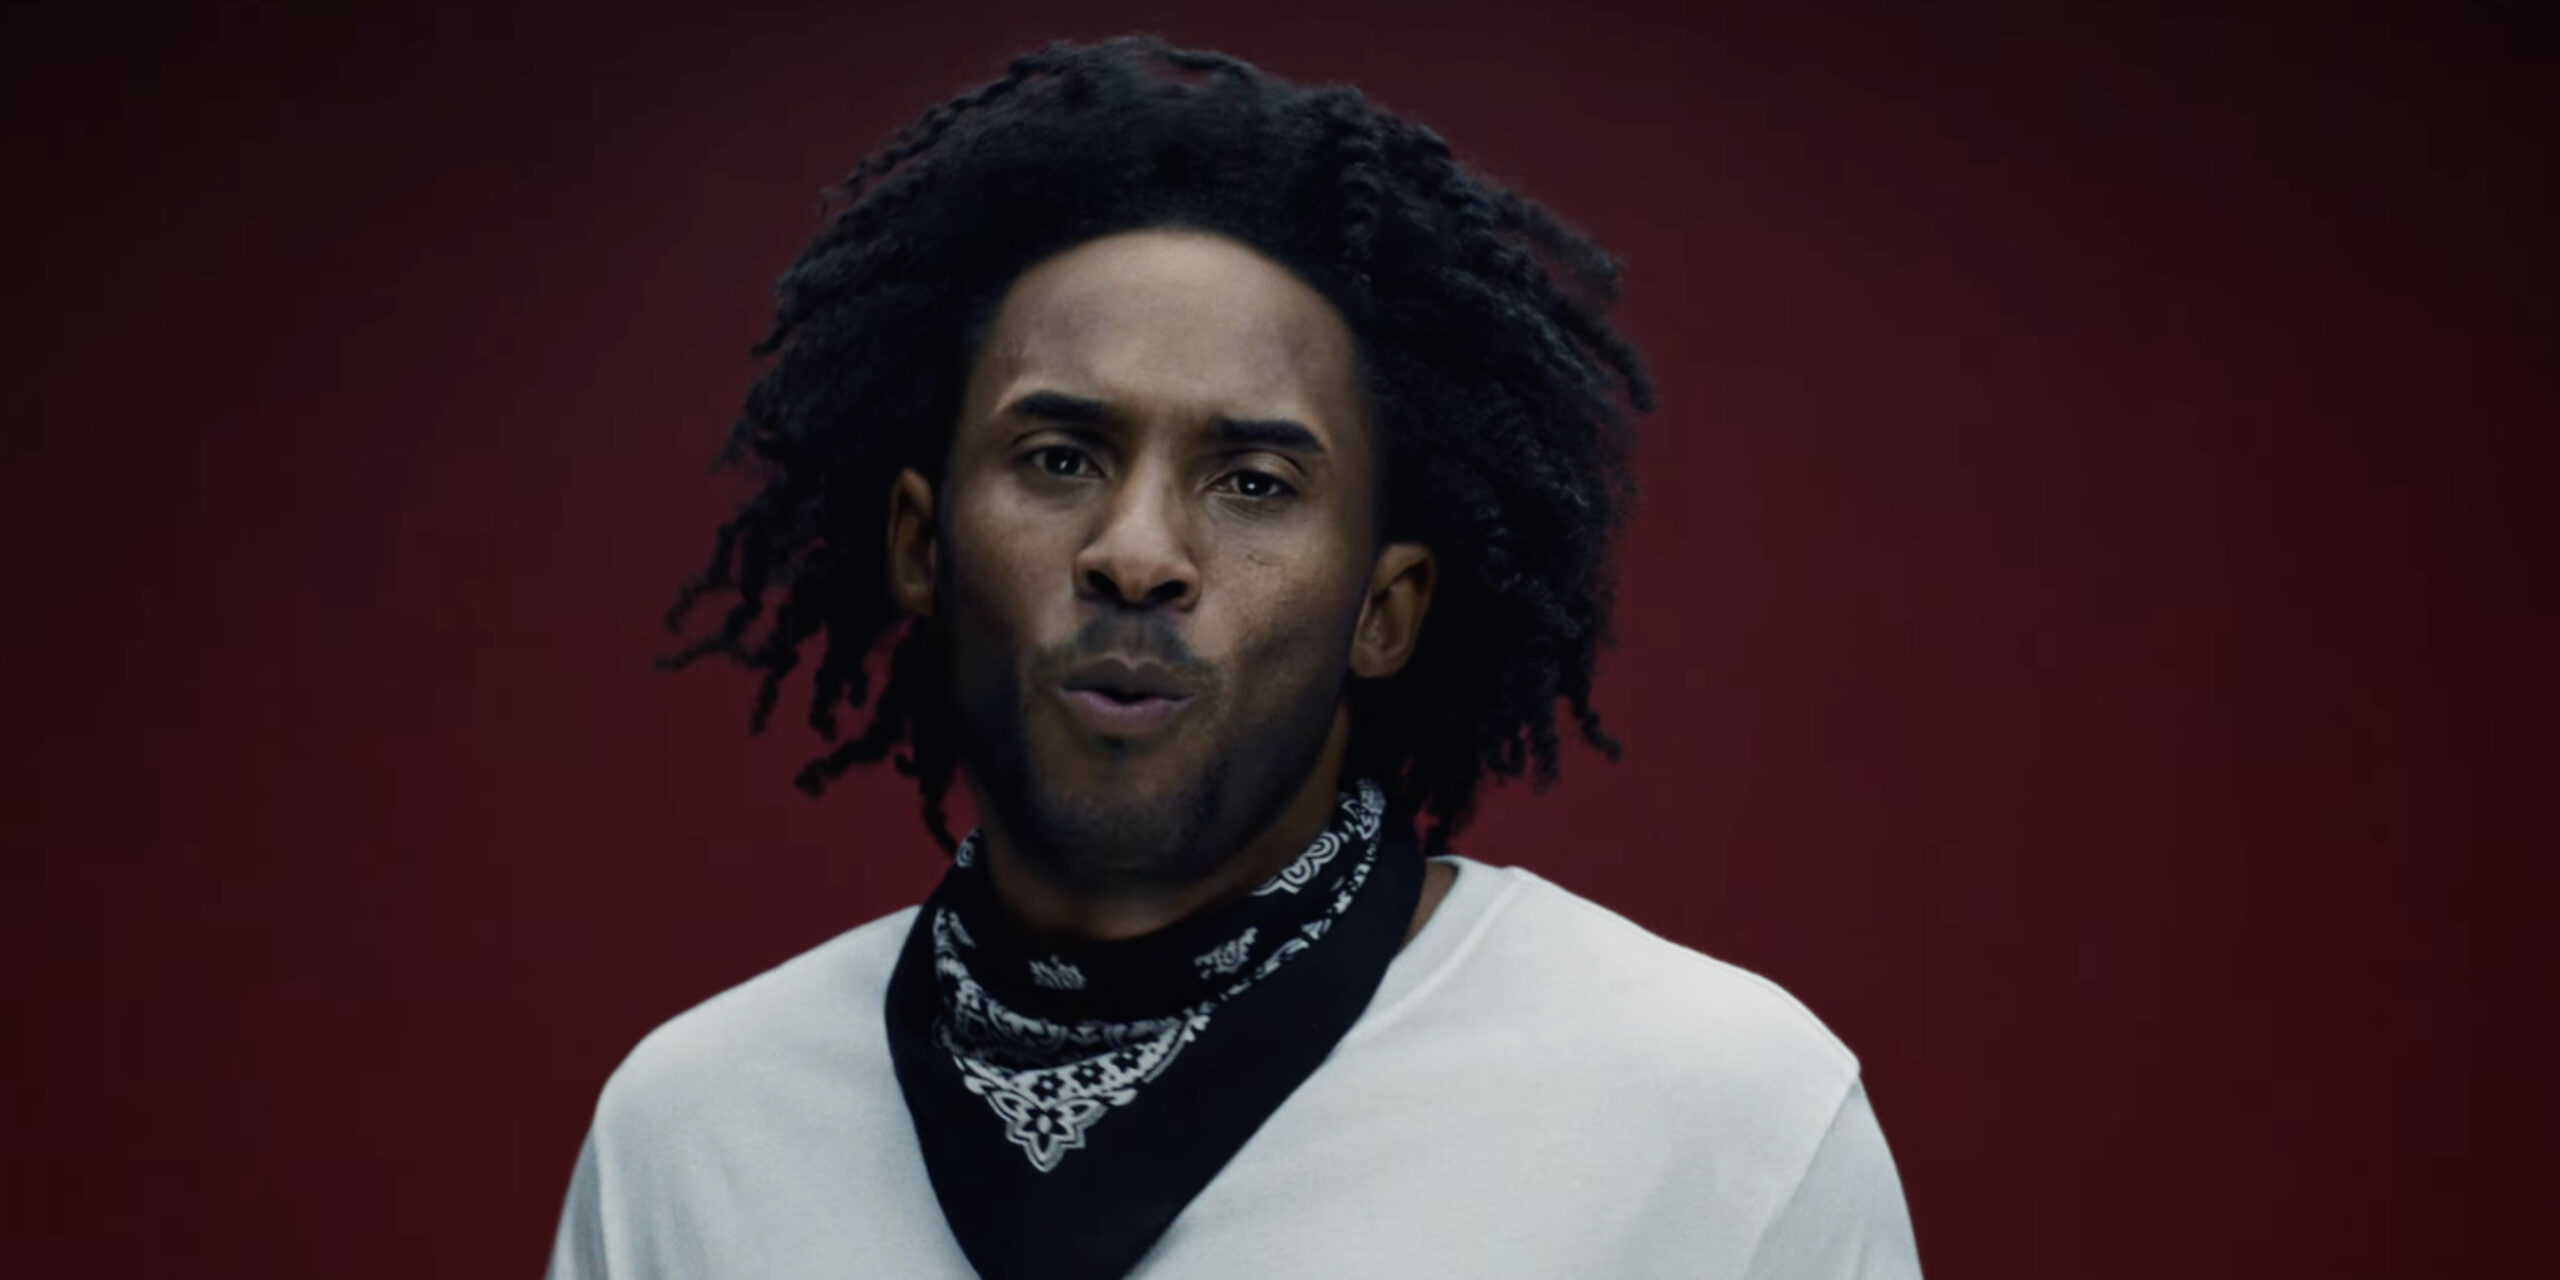 Kendrick Lamar sorprendió en su regreso con un video deepfake donde se transforma en OJ Simpson, Kanye West y Will Smith | El Imparcial de Oaxaca